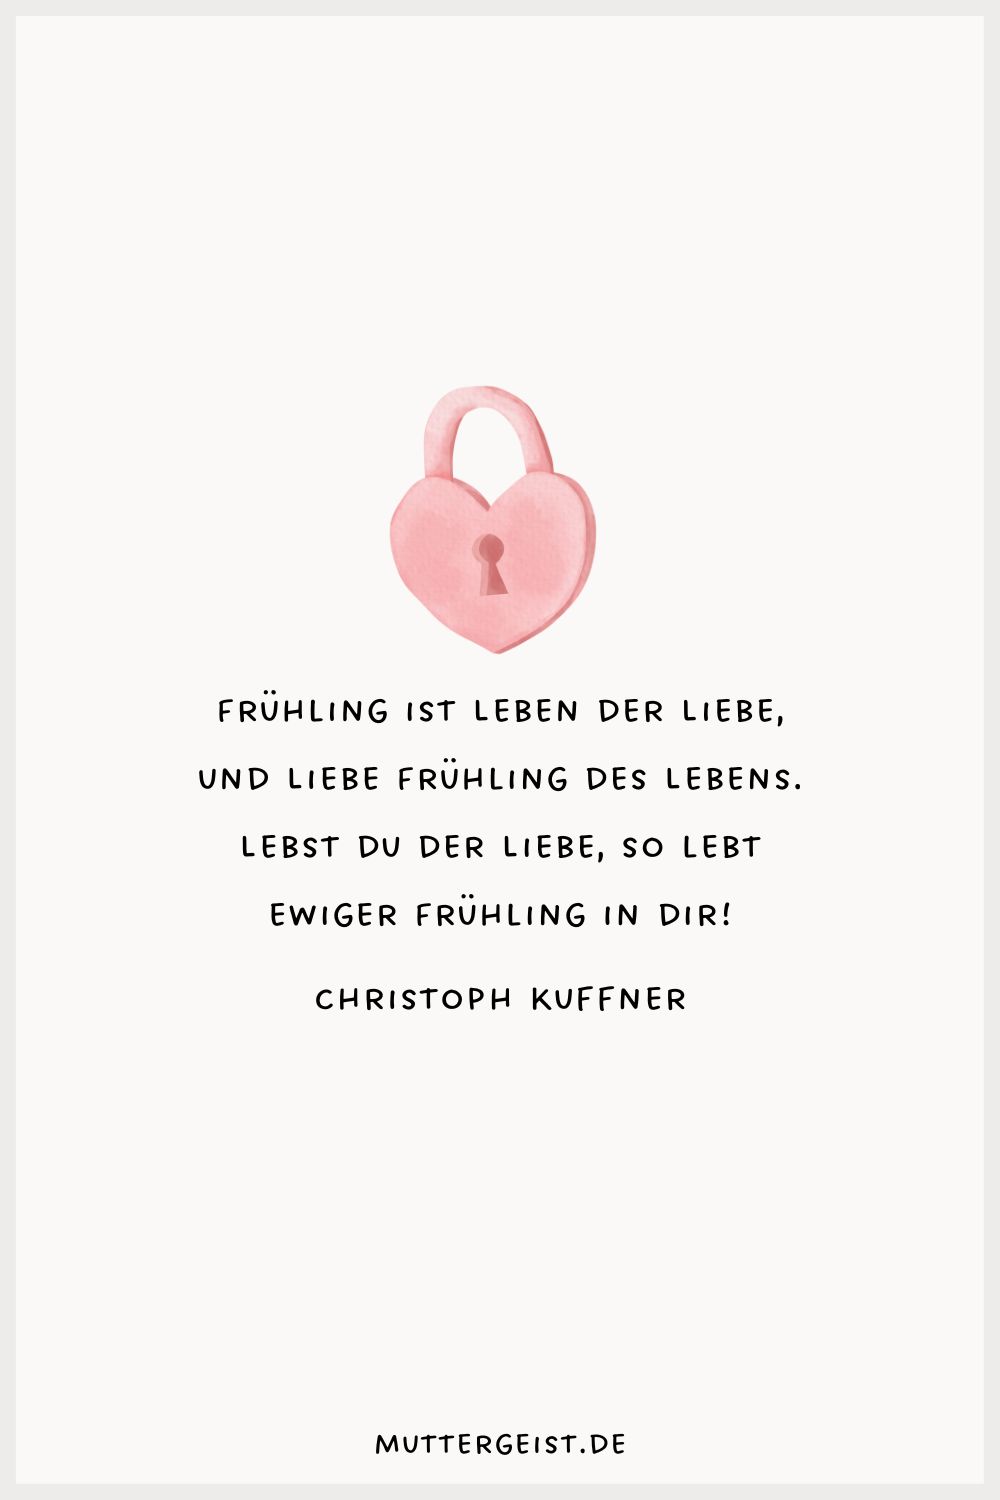 Zitat von Christoph Kuffner über die Liebe